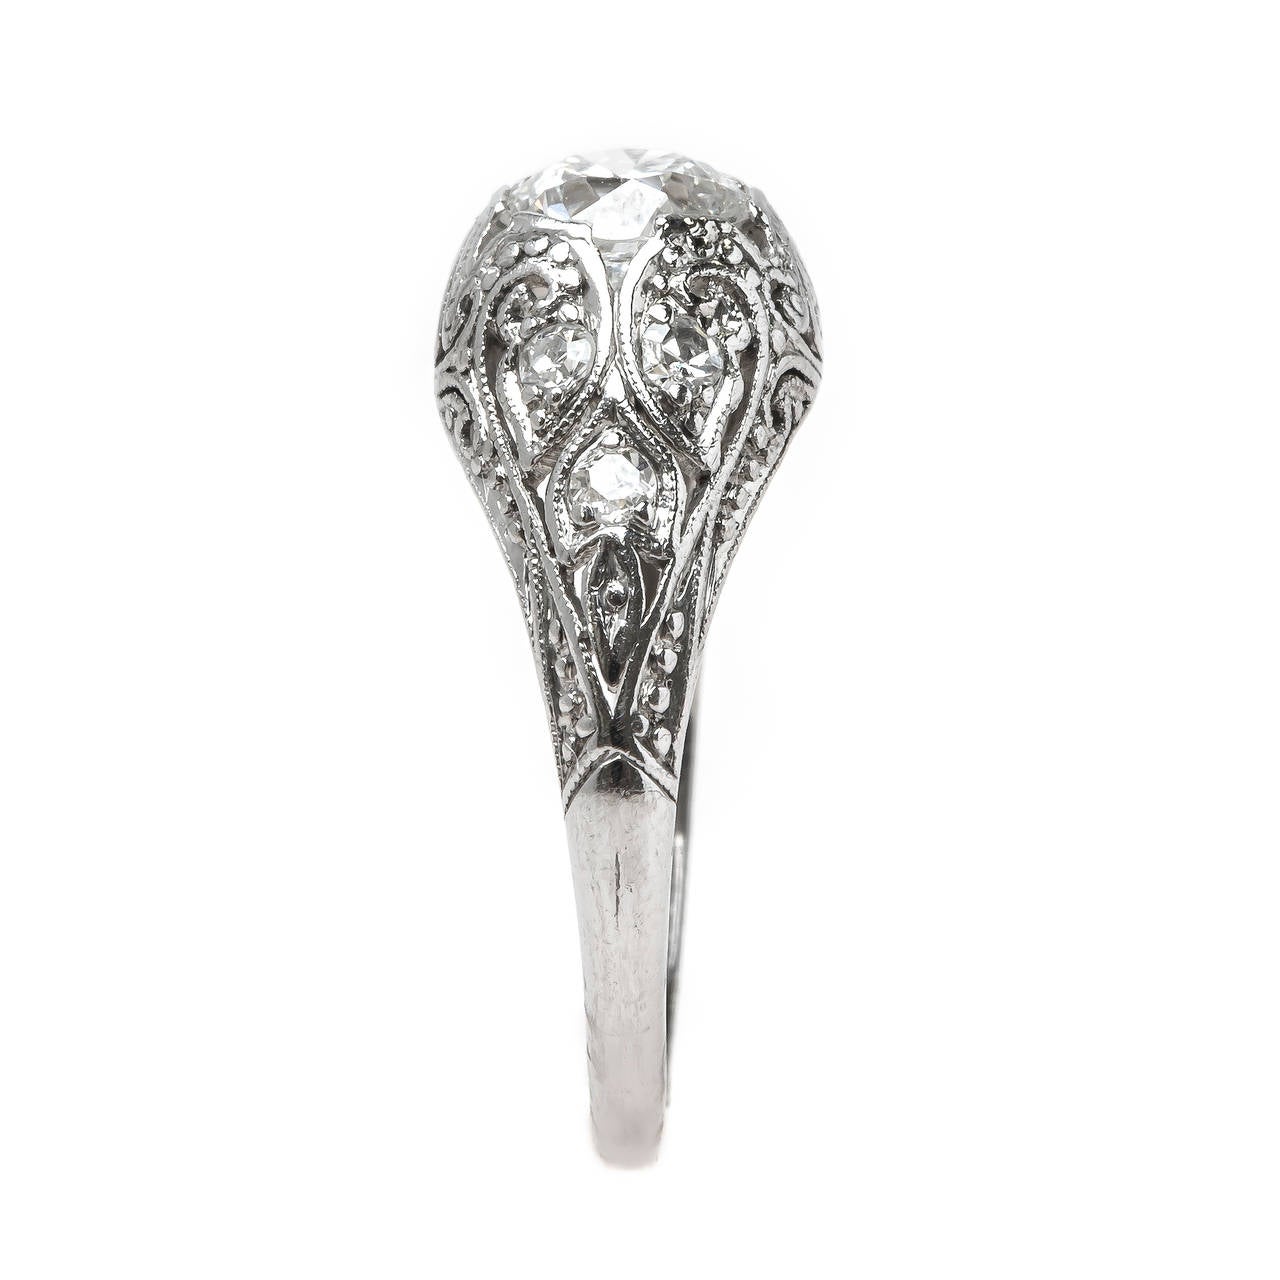 Exquisitely Handcrafted Edwardian Era Platinum Engagement Ring 1